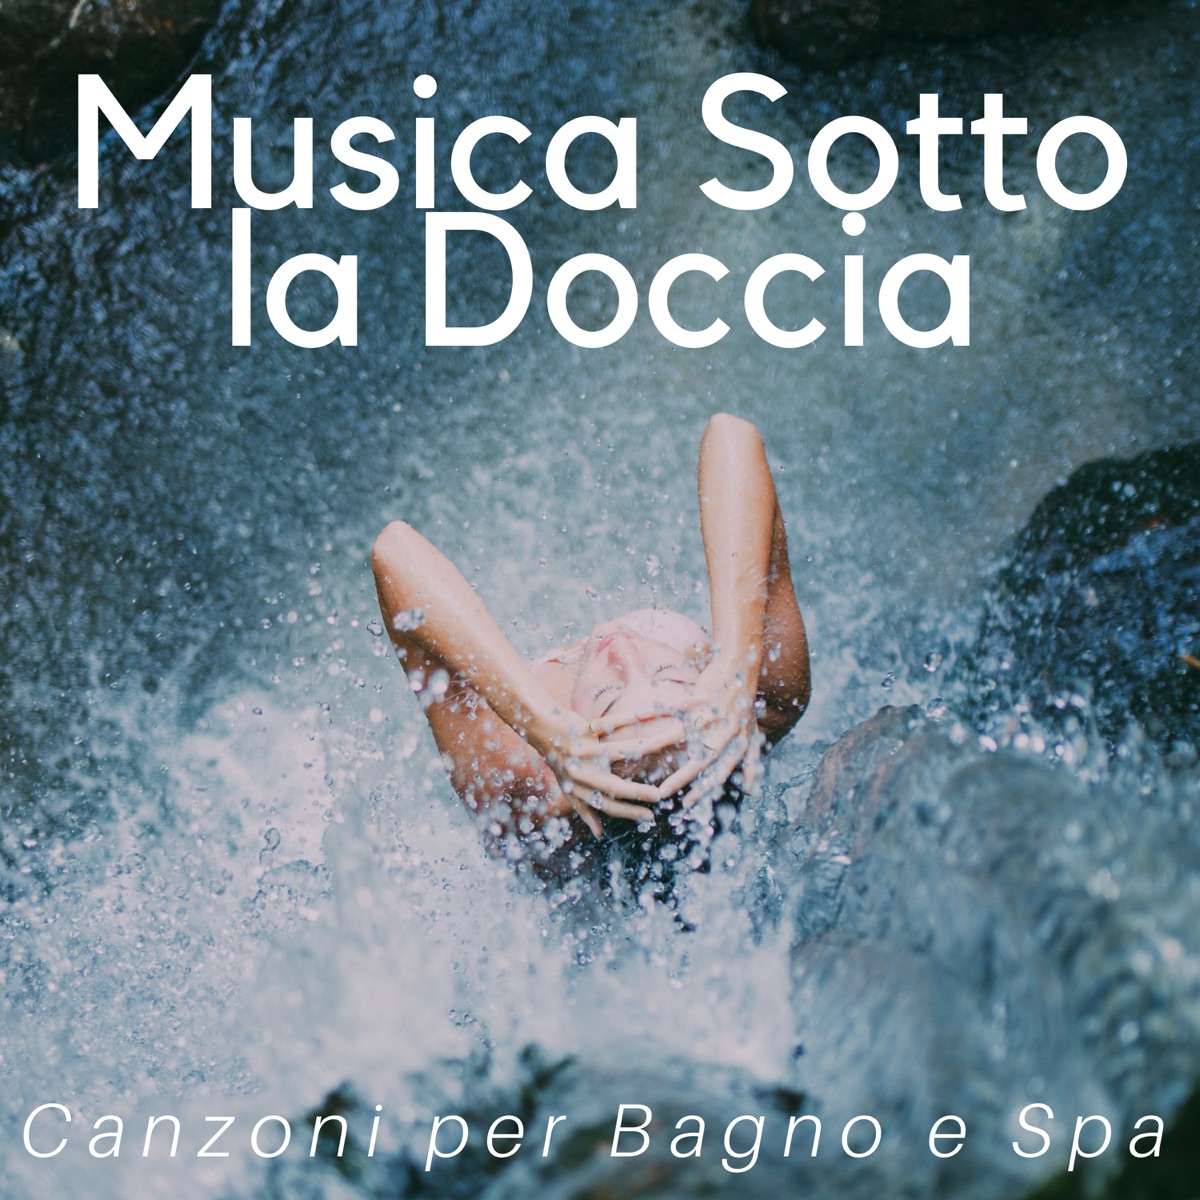 Musica sotto la doccia (Canzoni per bagno e spa) by Sandra Vece on Apple  Music